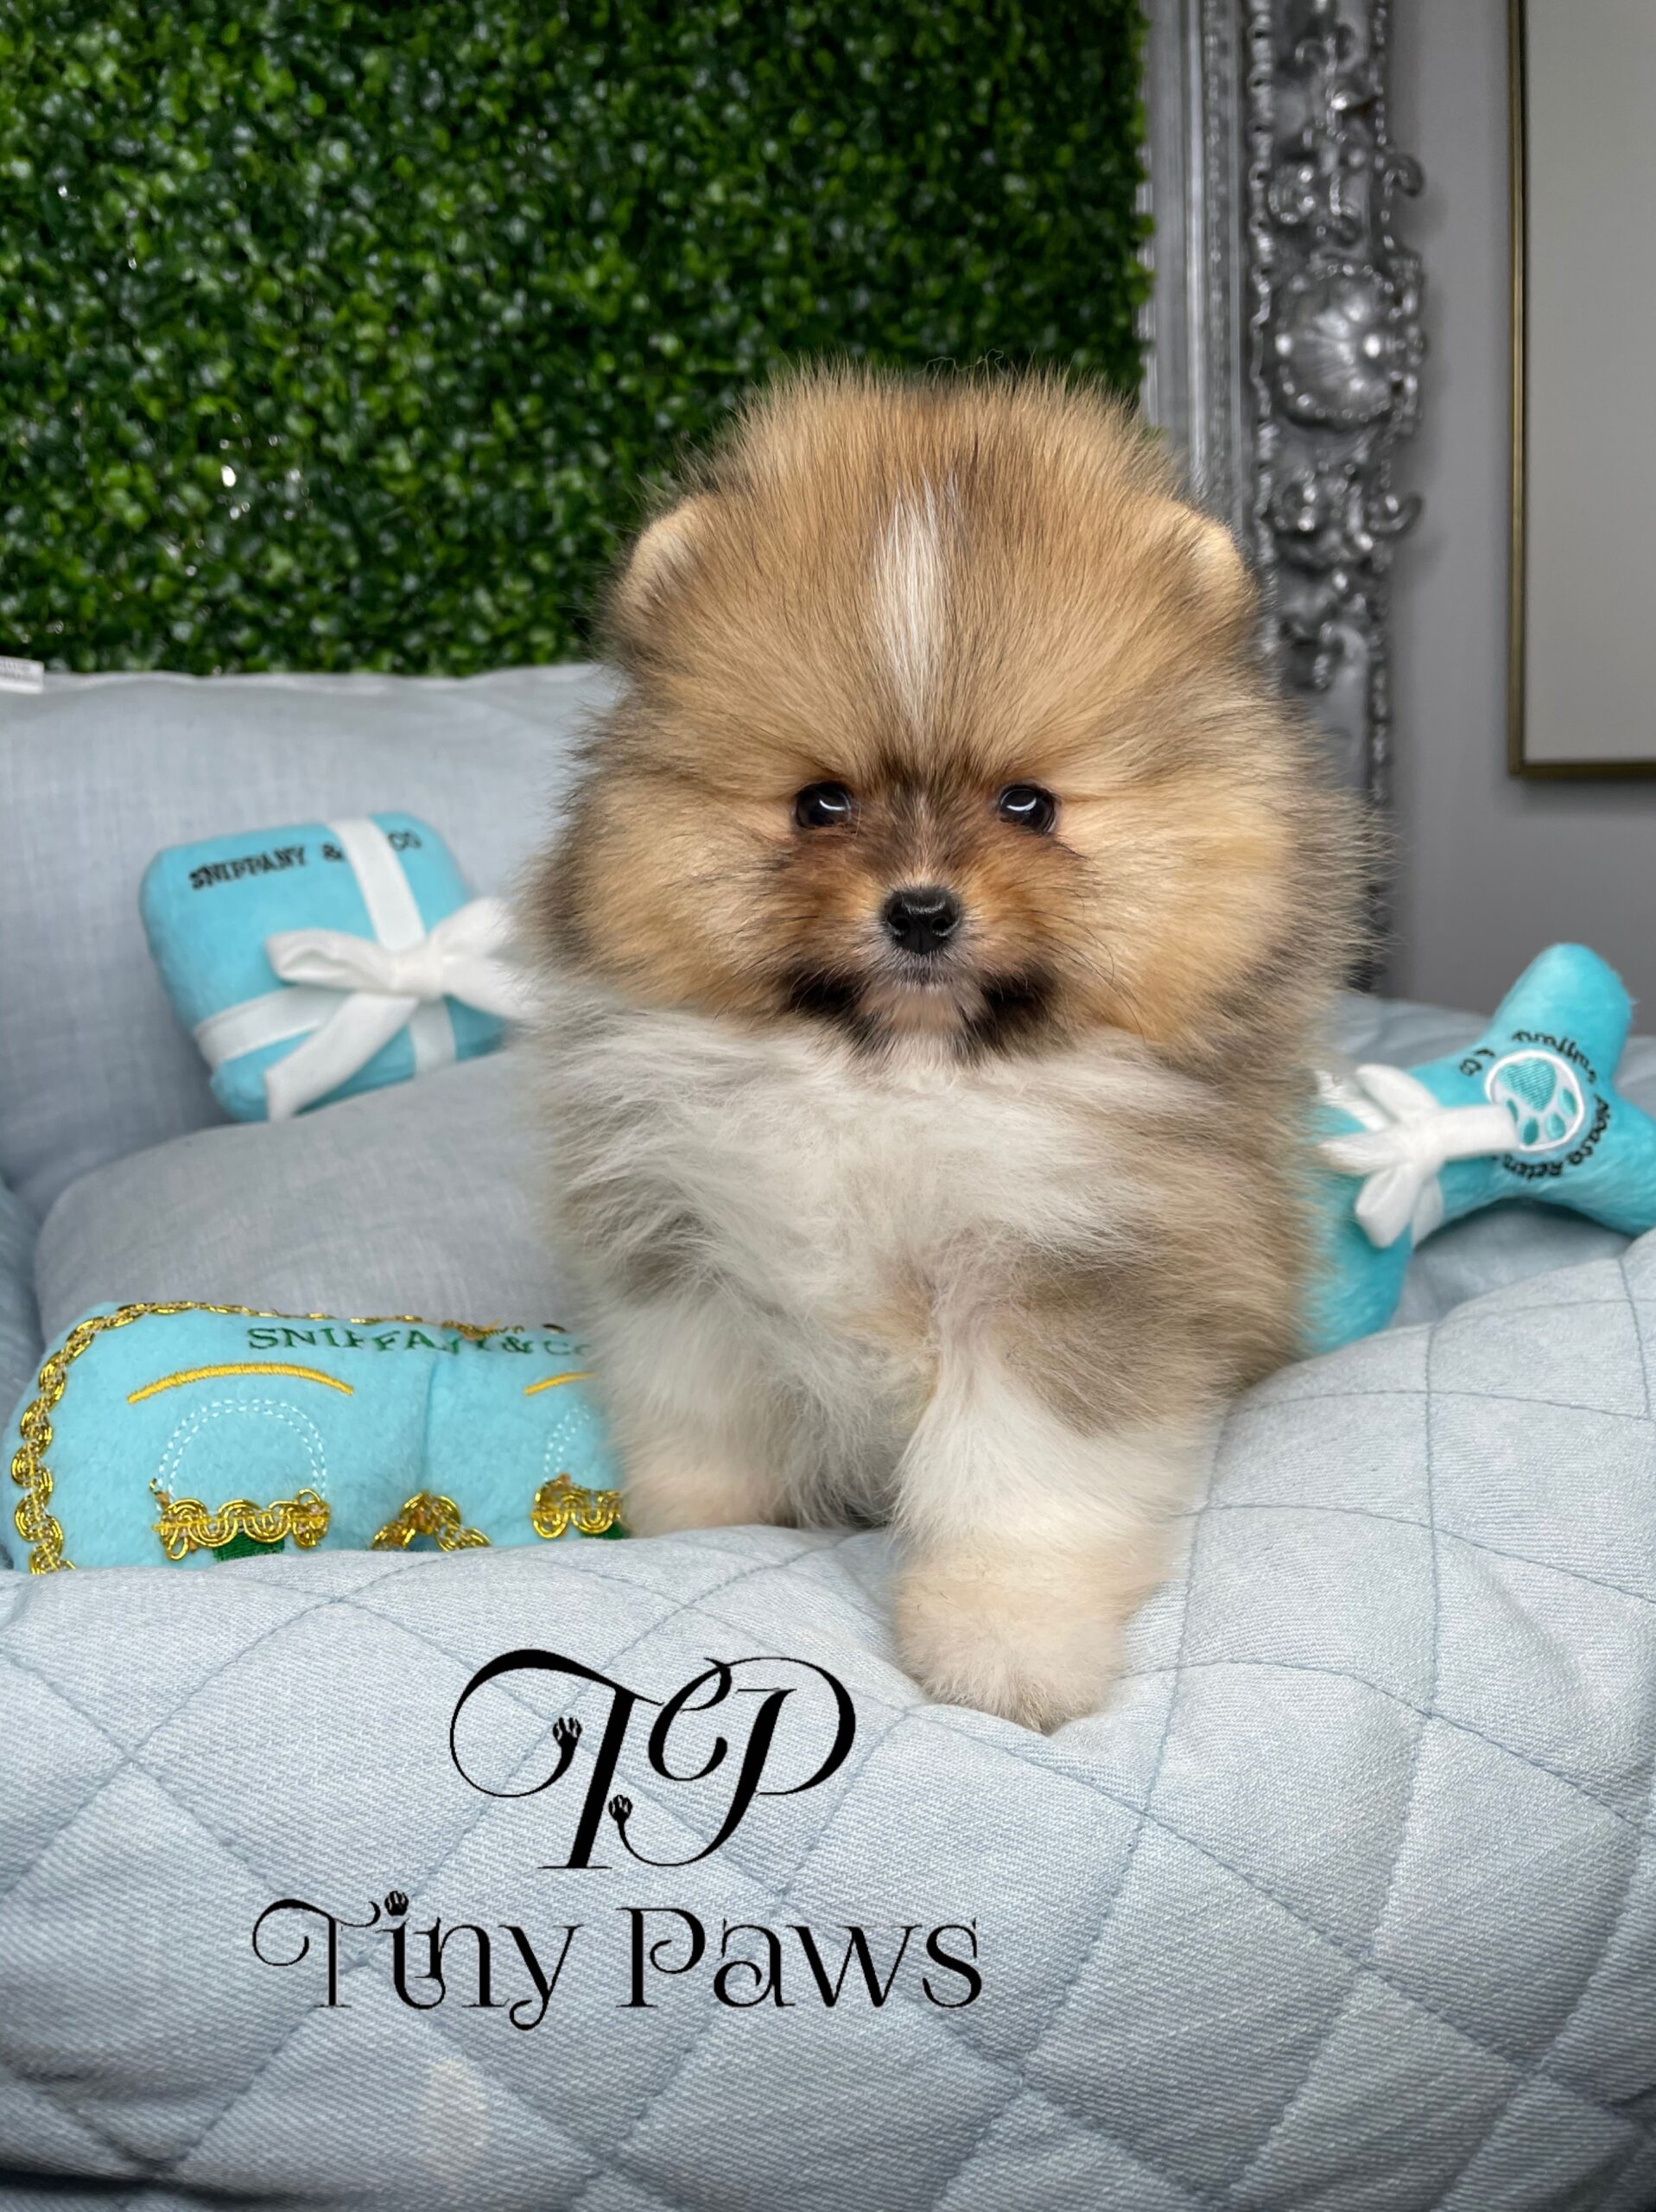 Patric Teacup Teddybear Pomeranian Puppy For Sale